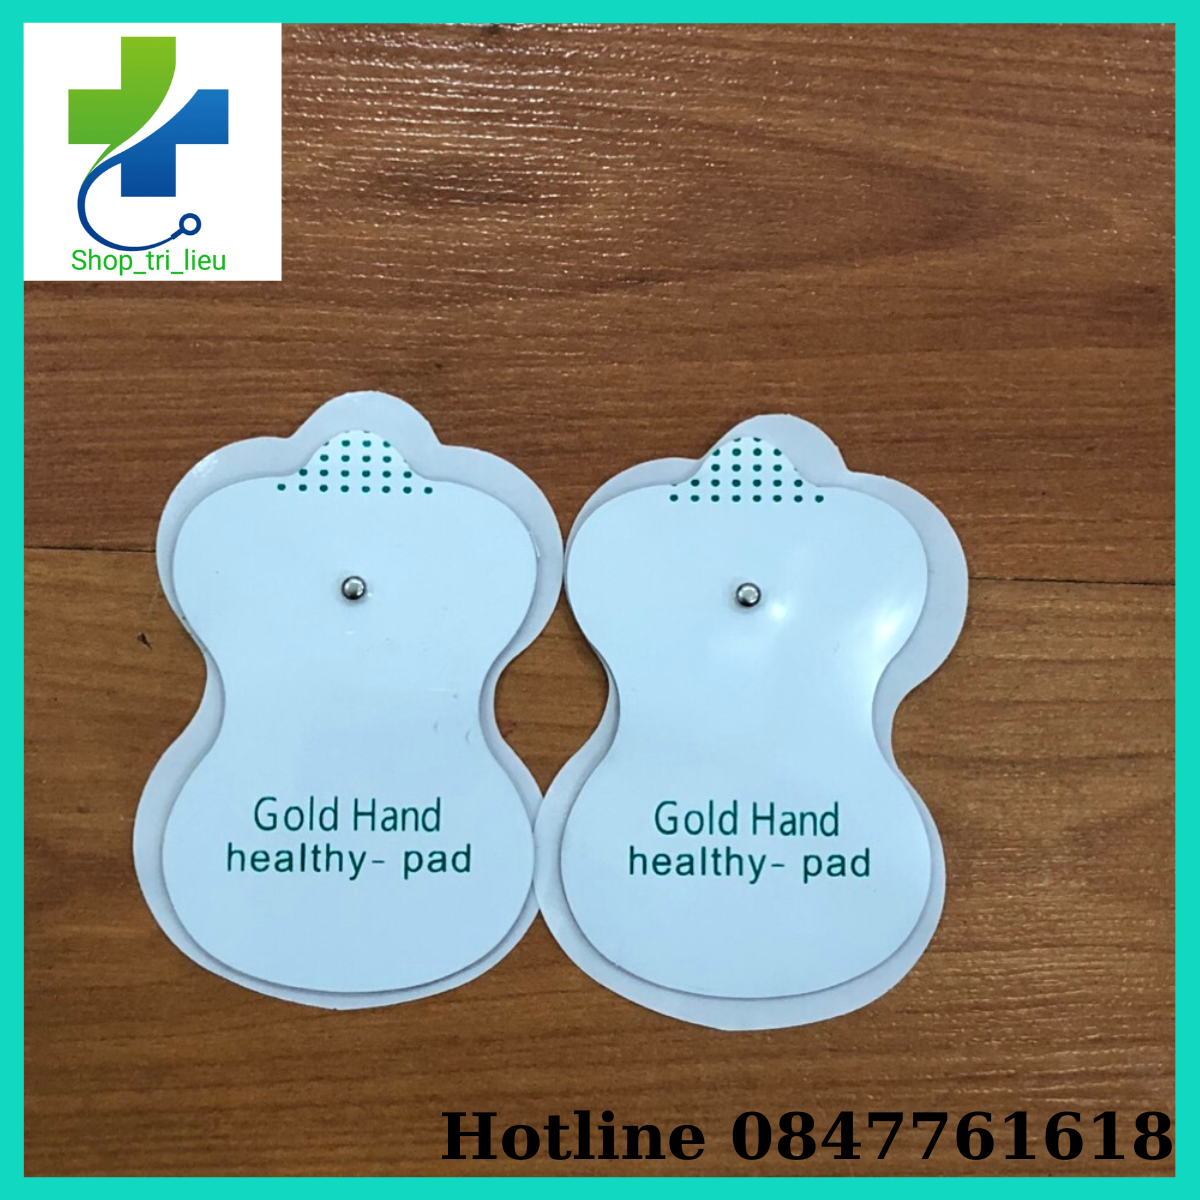 Miếng dán điện xung Gold Hand healthy- pad cho máy vật lý trị liệu